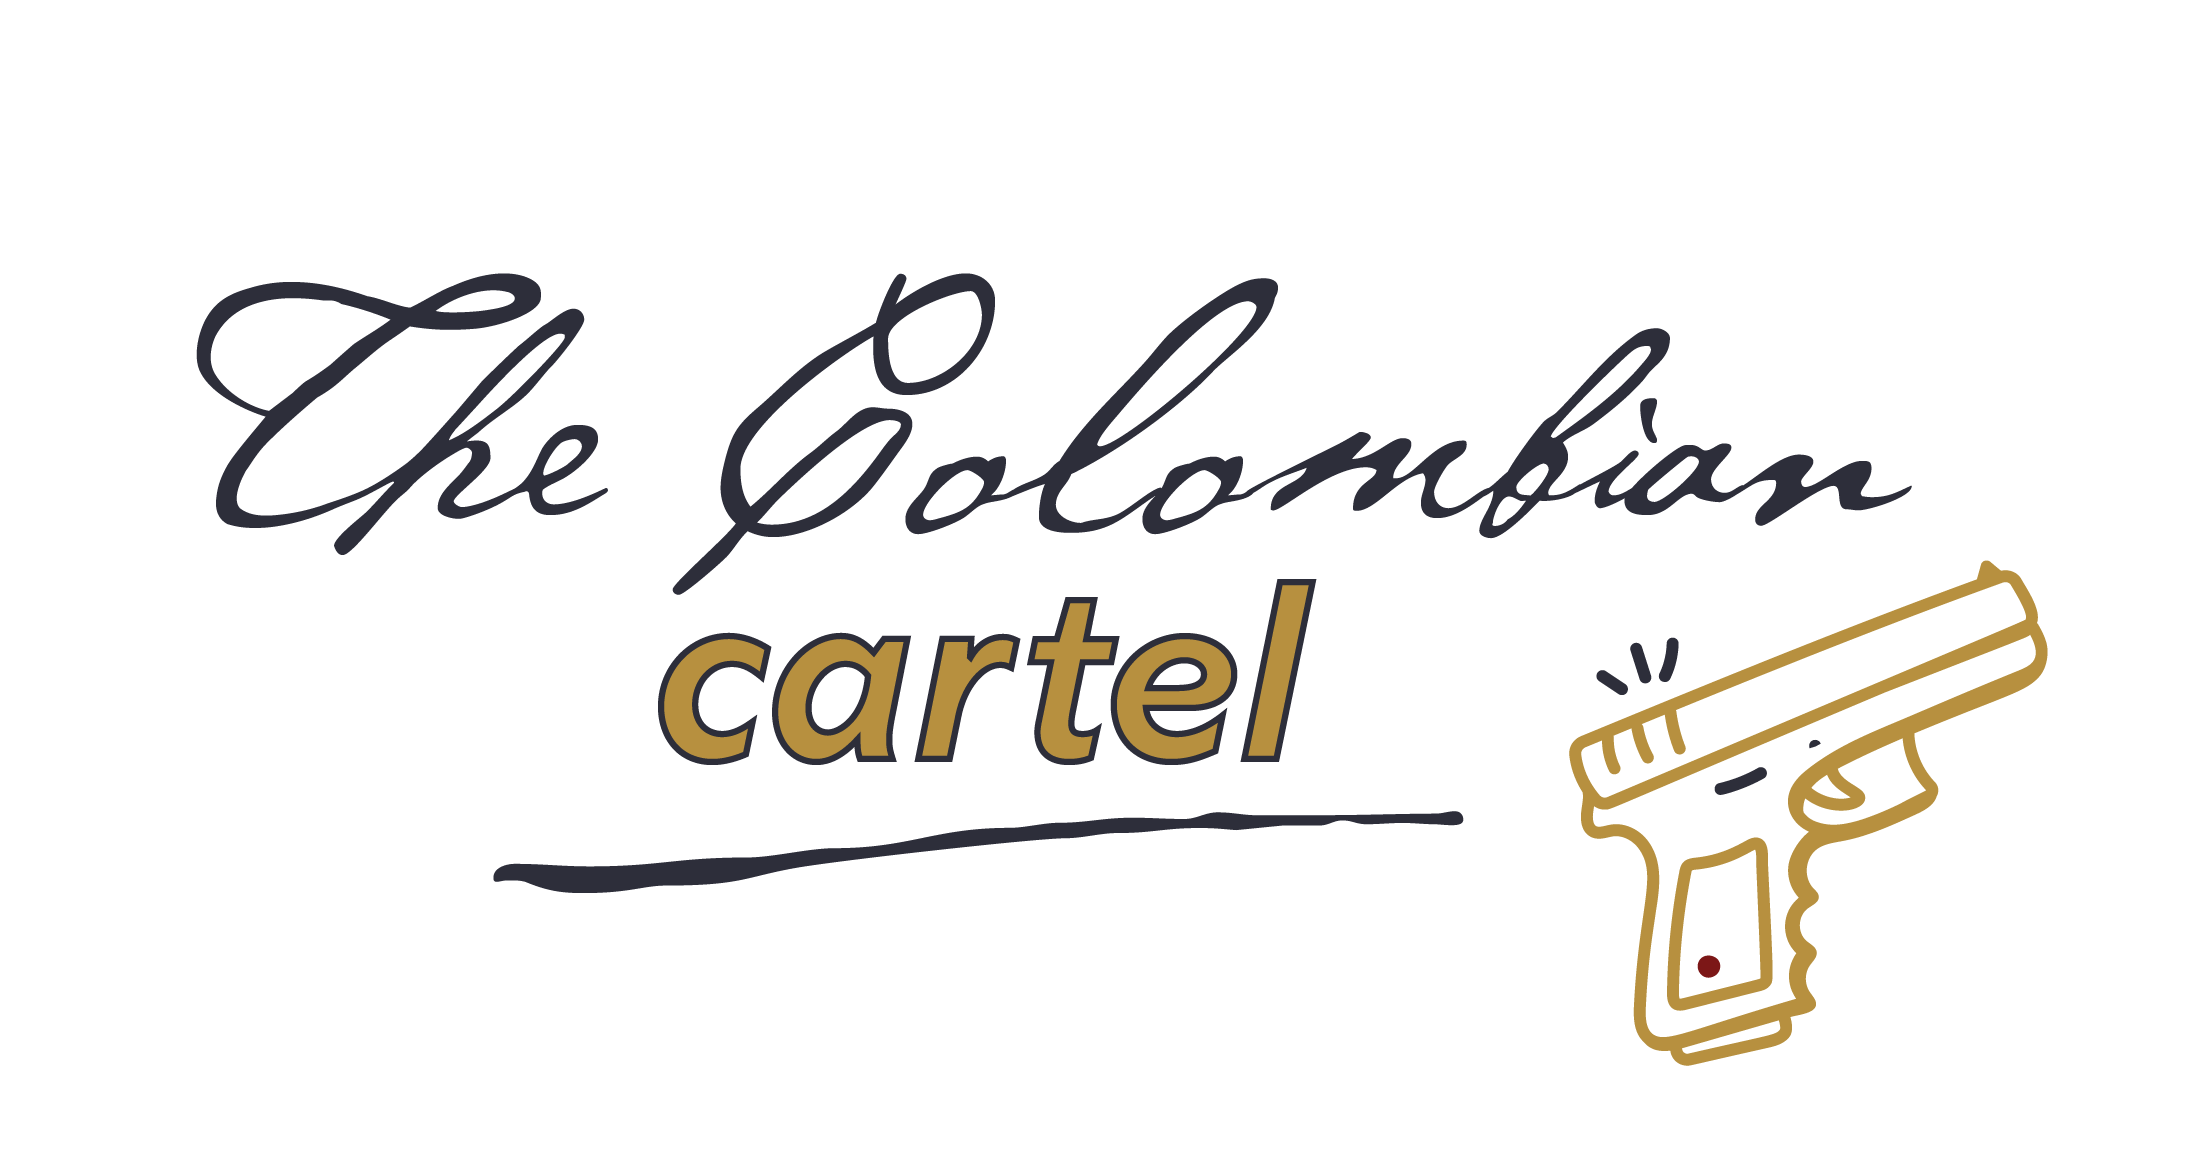 Le cartel Colombien, salle d'escape game à Louvain-La-Neuve